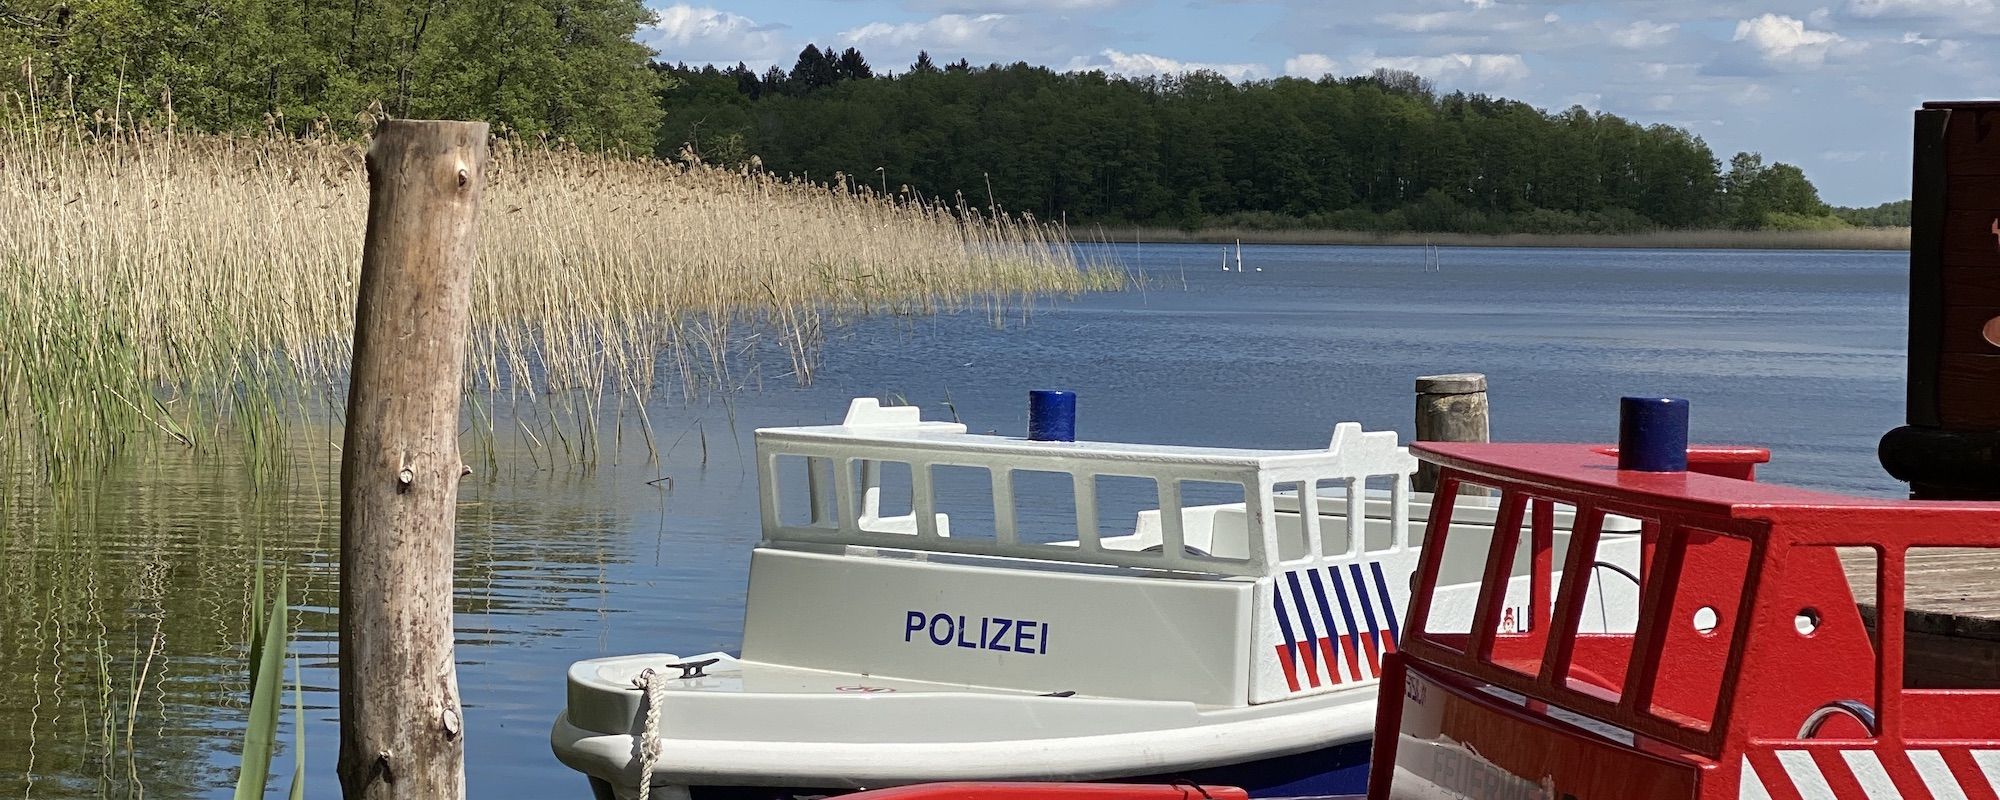 Familienhotel Borchard`s Rookhus an der Mecklenburgischen Seenplatte: zwei Boote (Polizei- und Feuerwehrboot) liegen am Steg am Labussee an